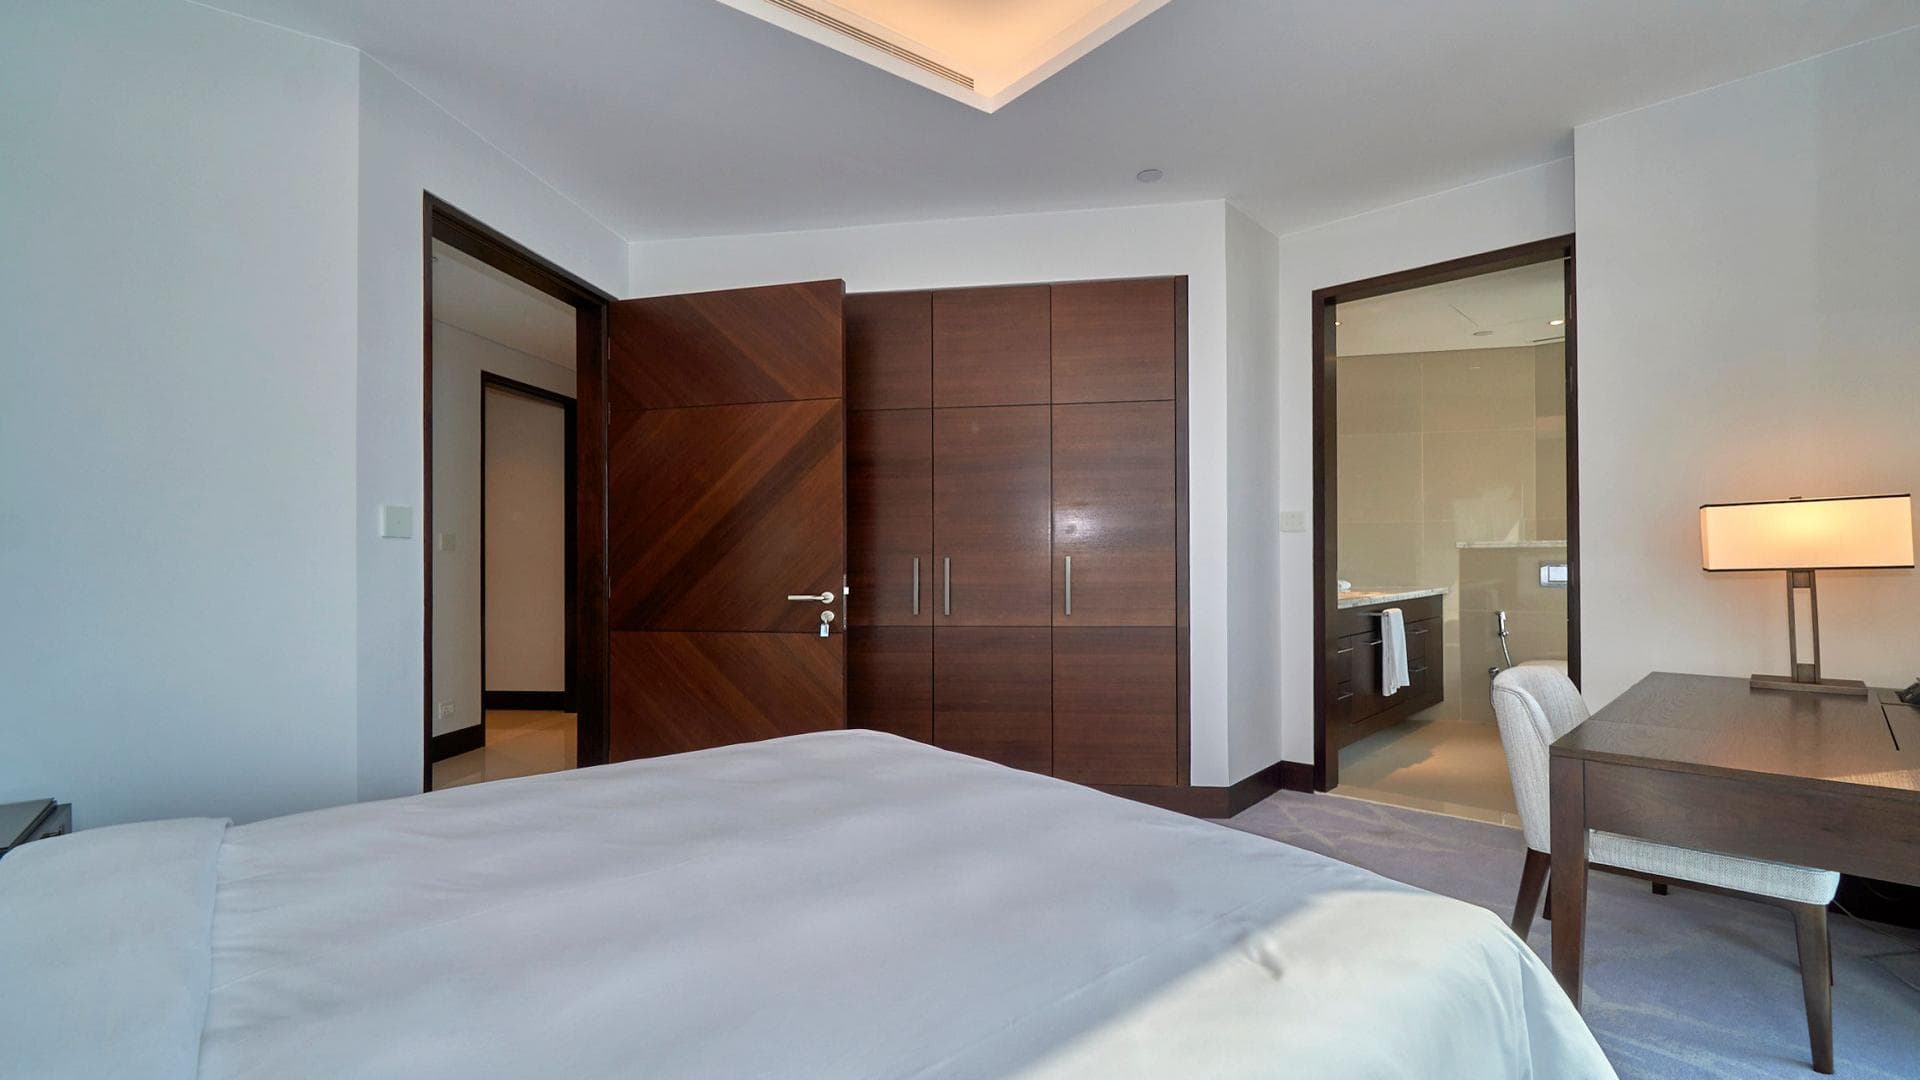 3 Bedroom Apartment For Rent Al Thamam 09 Lp36011 1280aad9da2b5900.jpeg